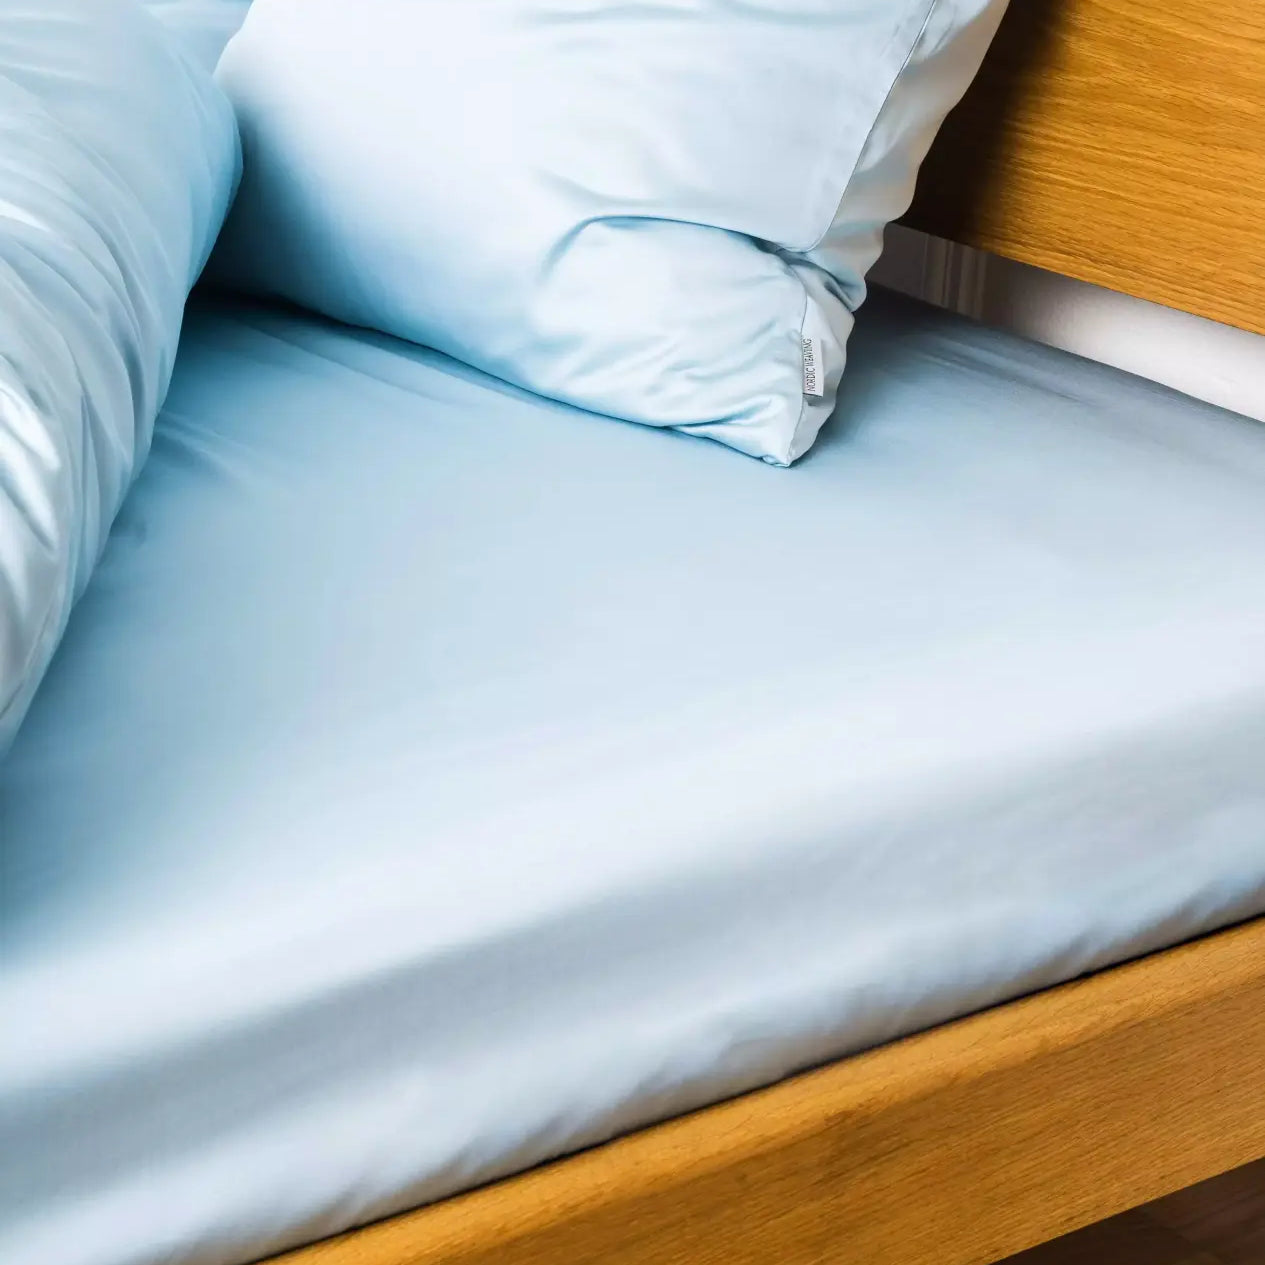 Miljøbillede af seng redt med bambus kuvertlagen i farven lys blå i størrelsen 160x200x20cm